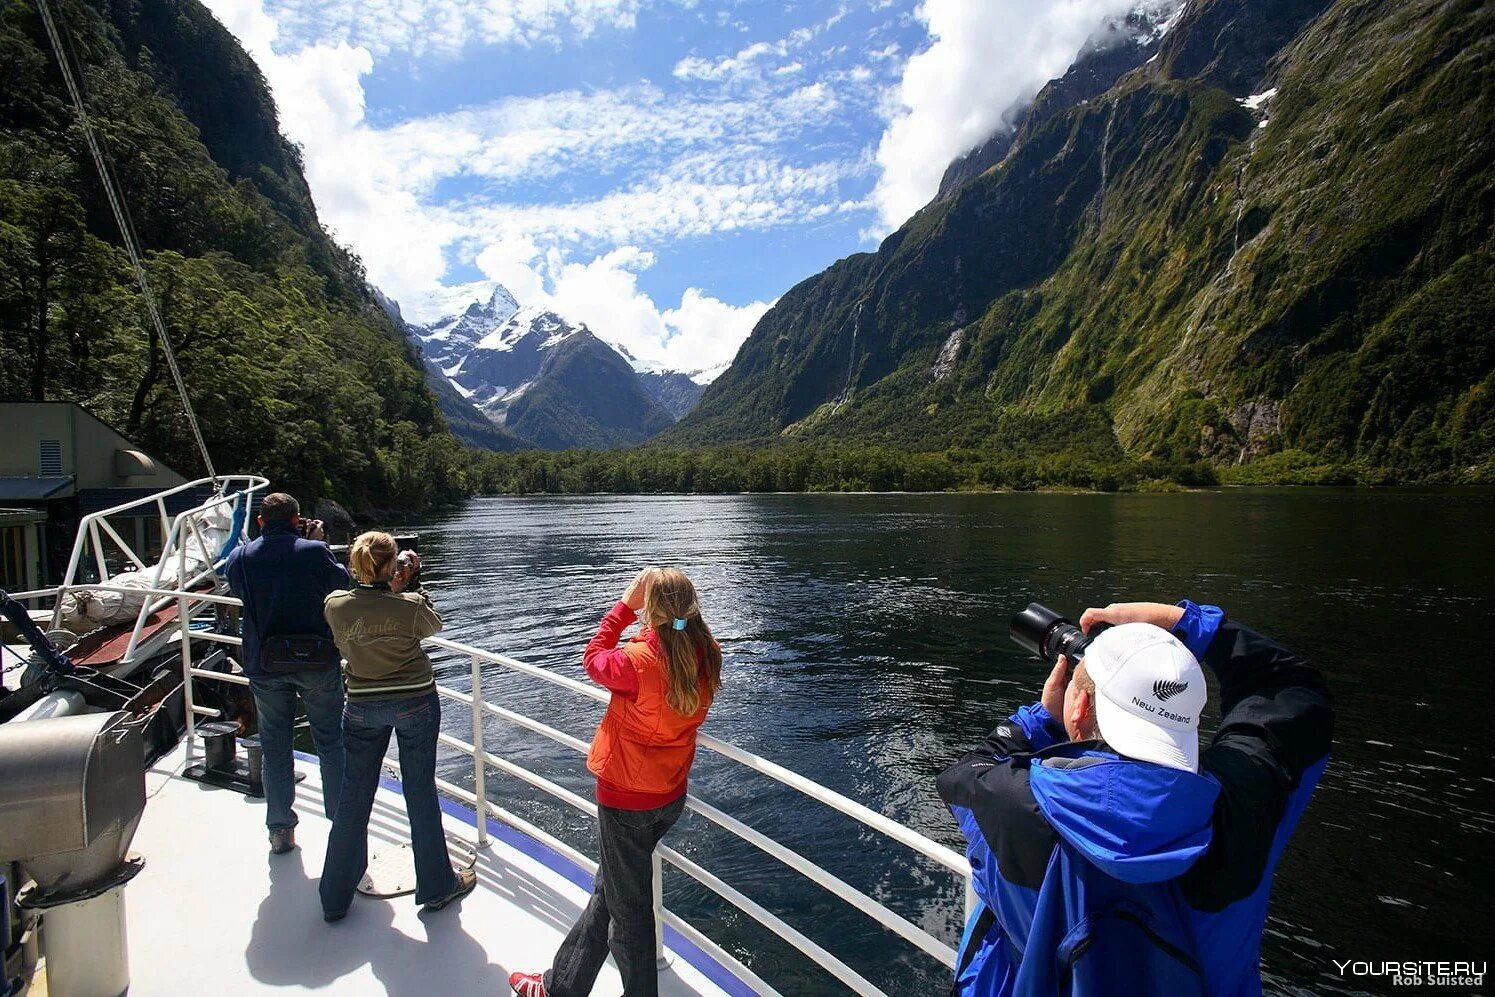 Милфорд-саунд. Милфорд-саунд новая Зеландия население. Туристы в новой Зеландии. Новая Зеландия туристический путь Милфорд.